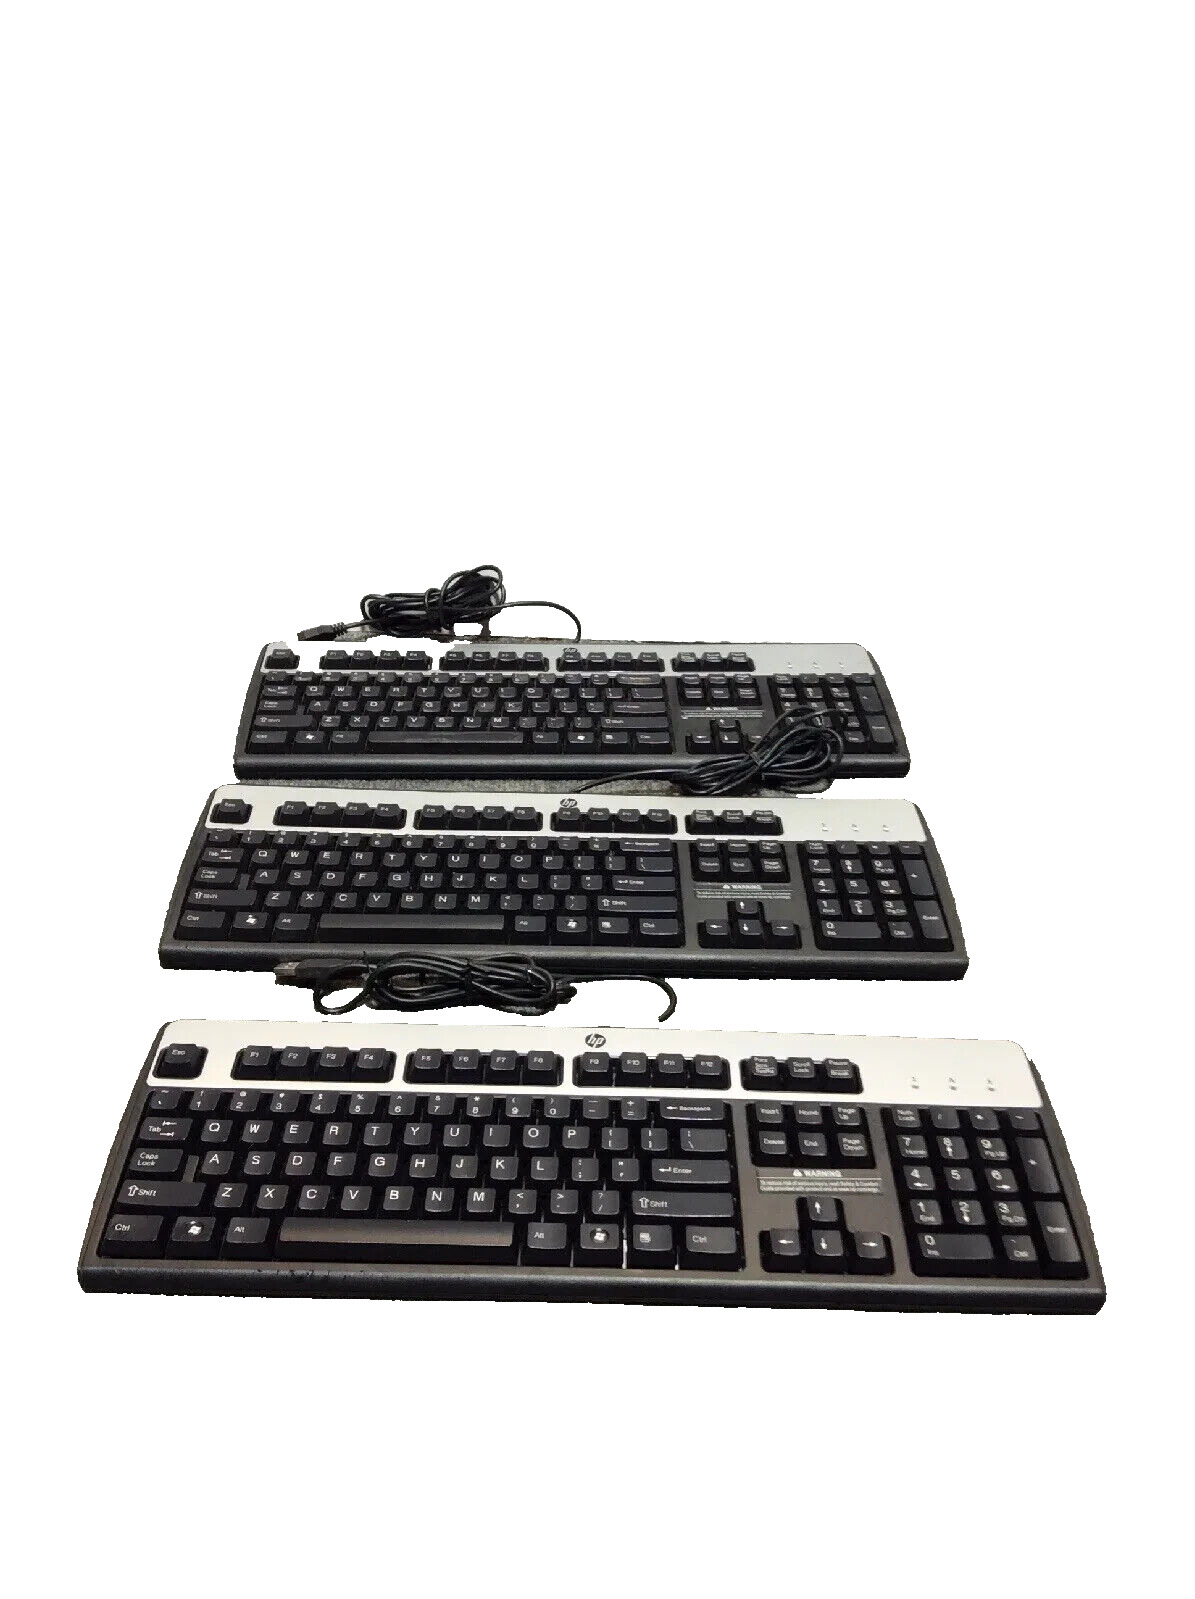 Lot of 3 HP KU-0316 537746-001 104-Key USB Black/Silver Wired Keyboard -